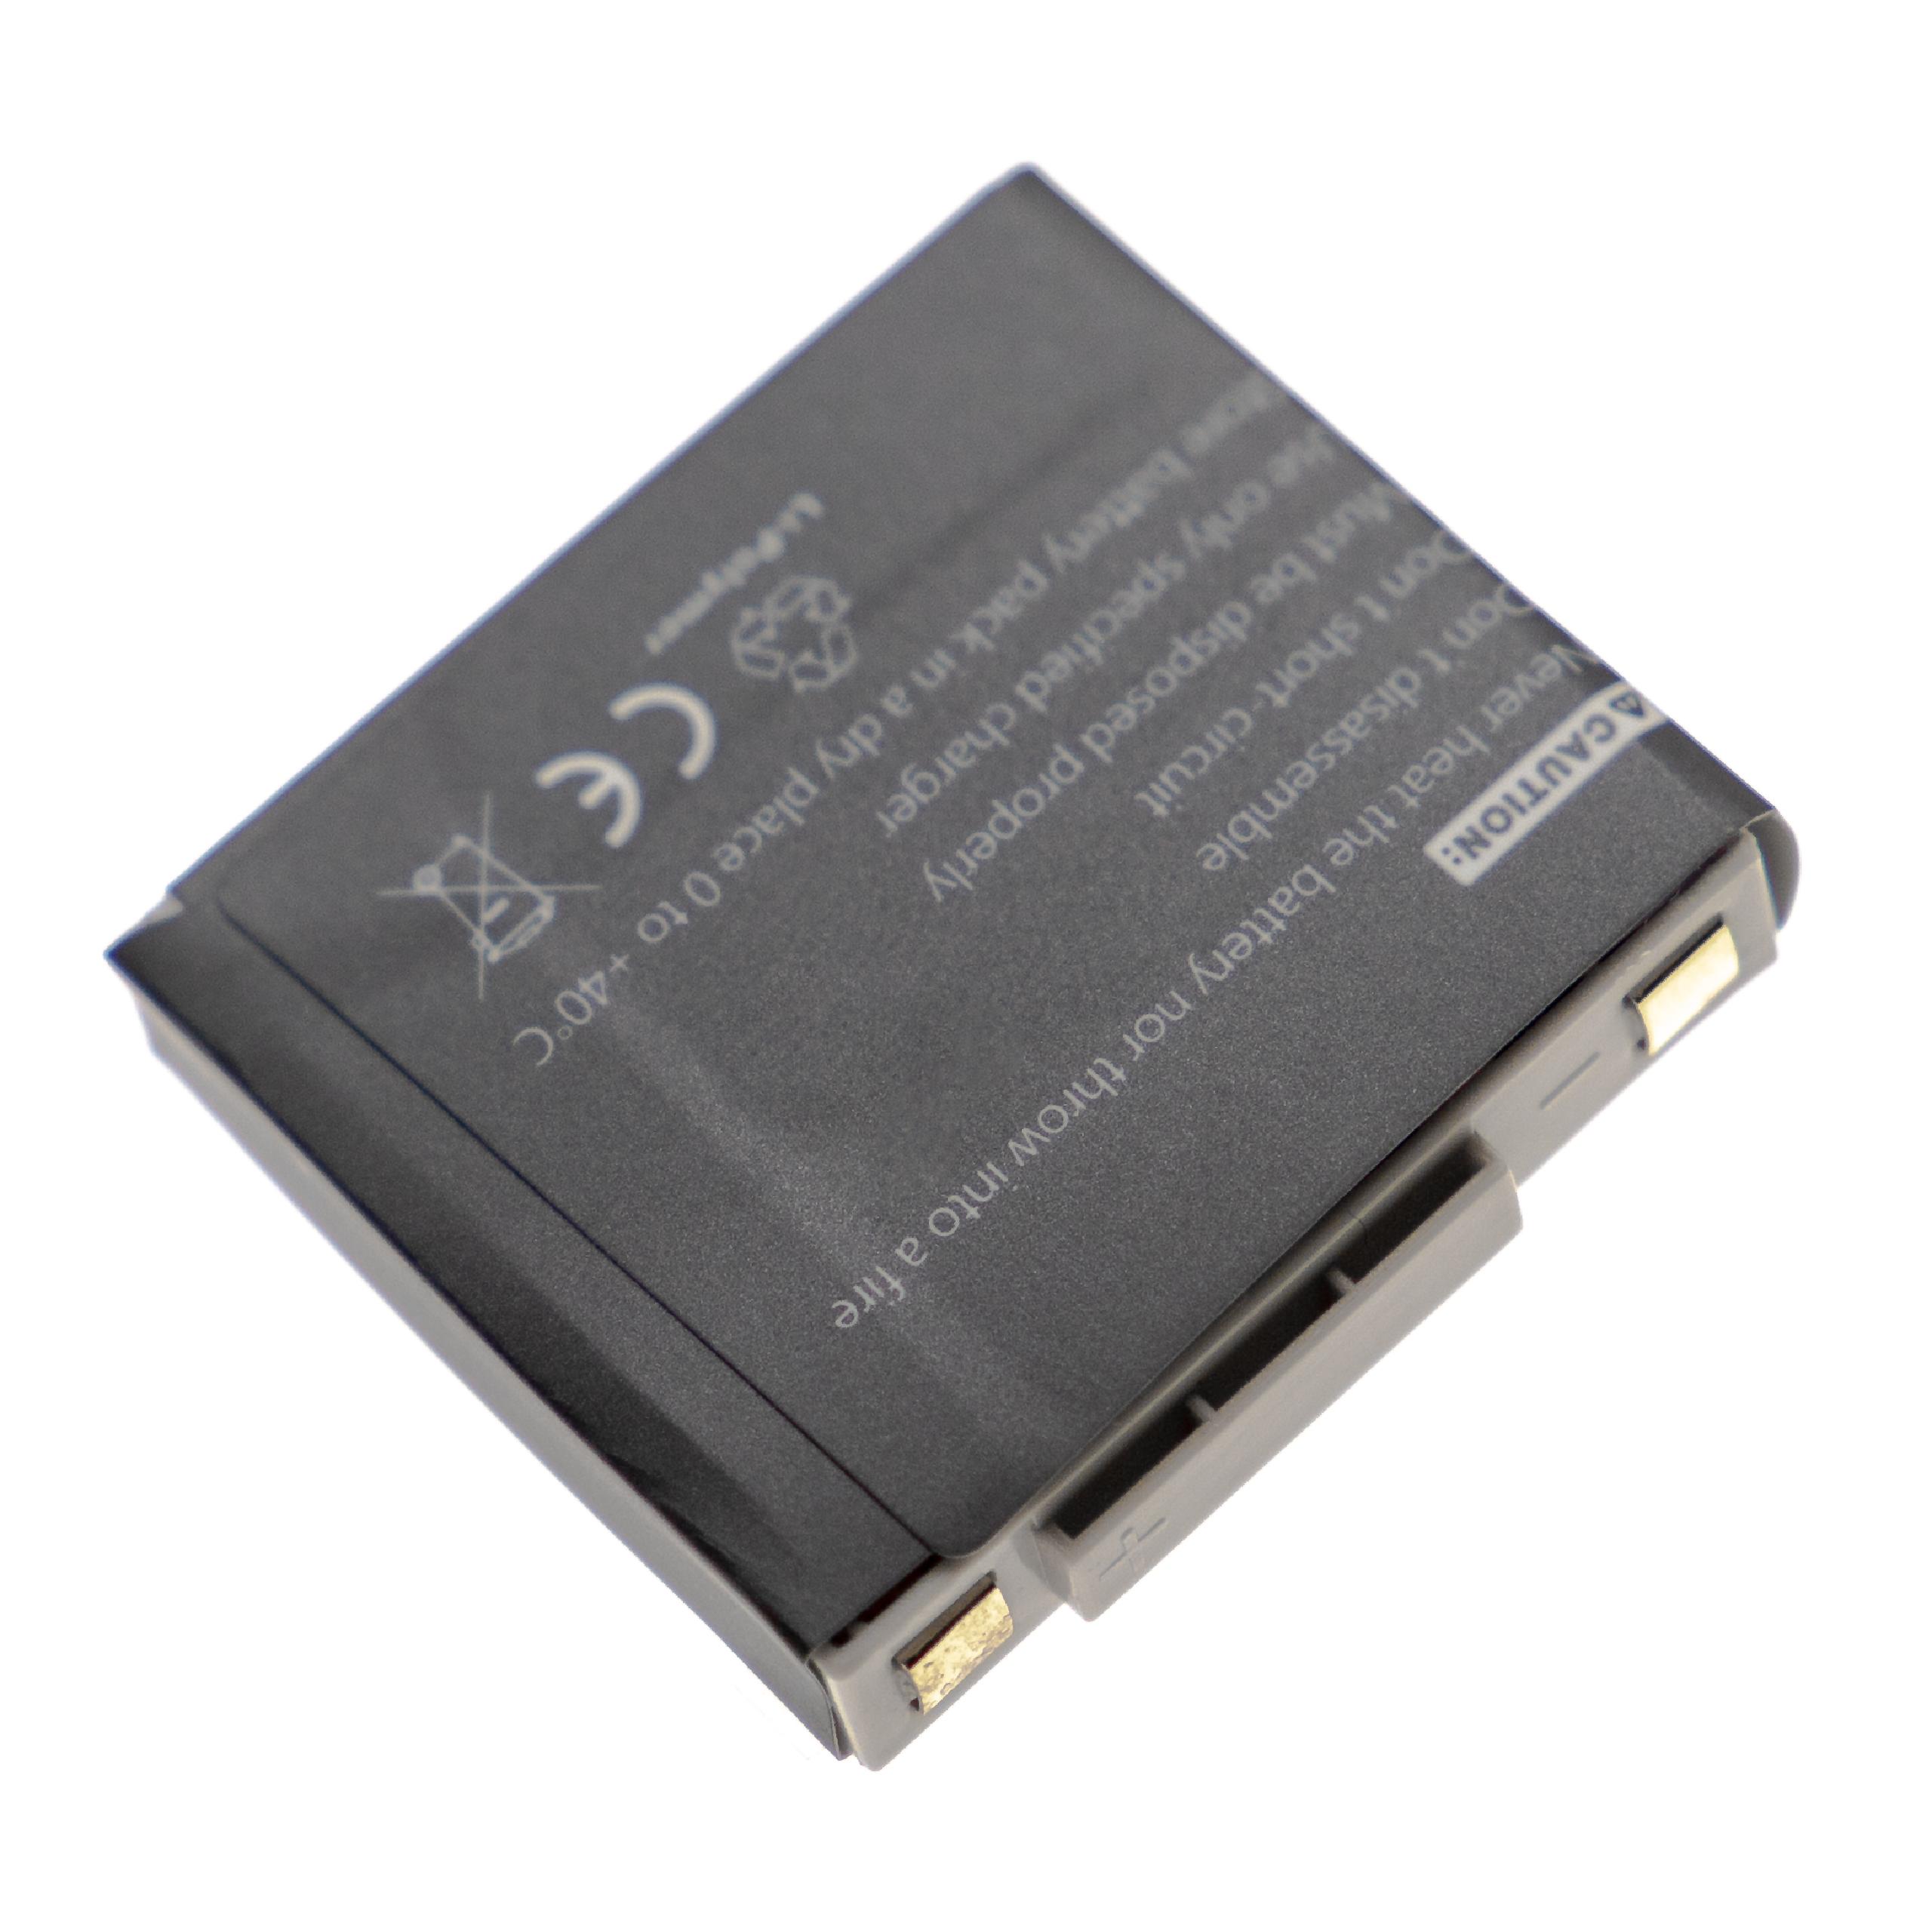 Batterie remplace GN Netcom 2901-249, 14151-02, 14151-01 pour casque audio - 340mAh 3,7V Li-polymère